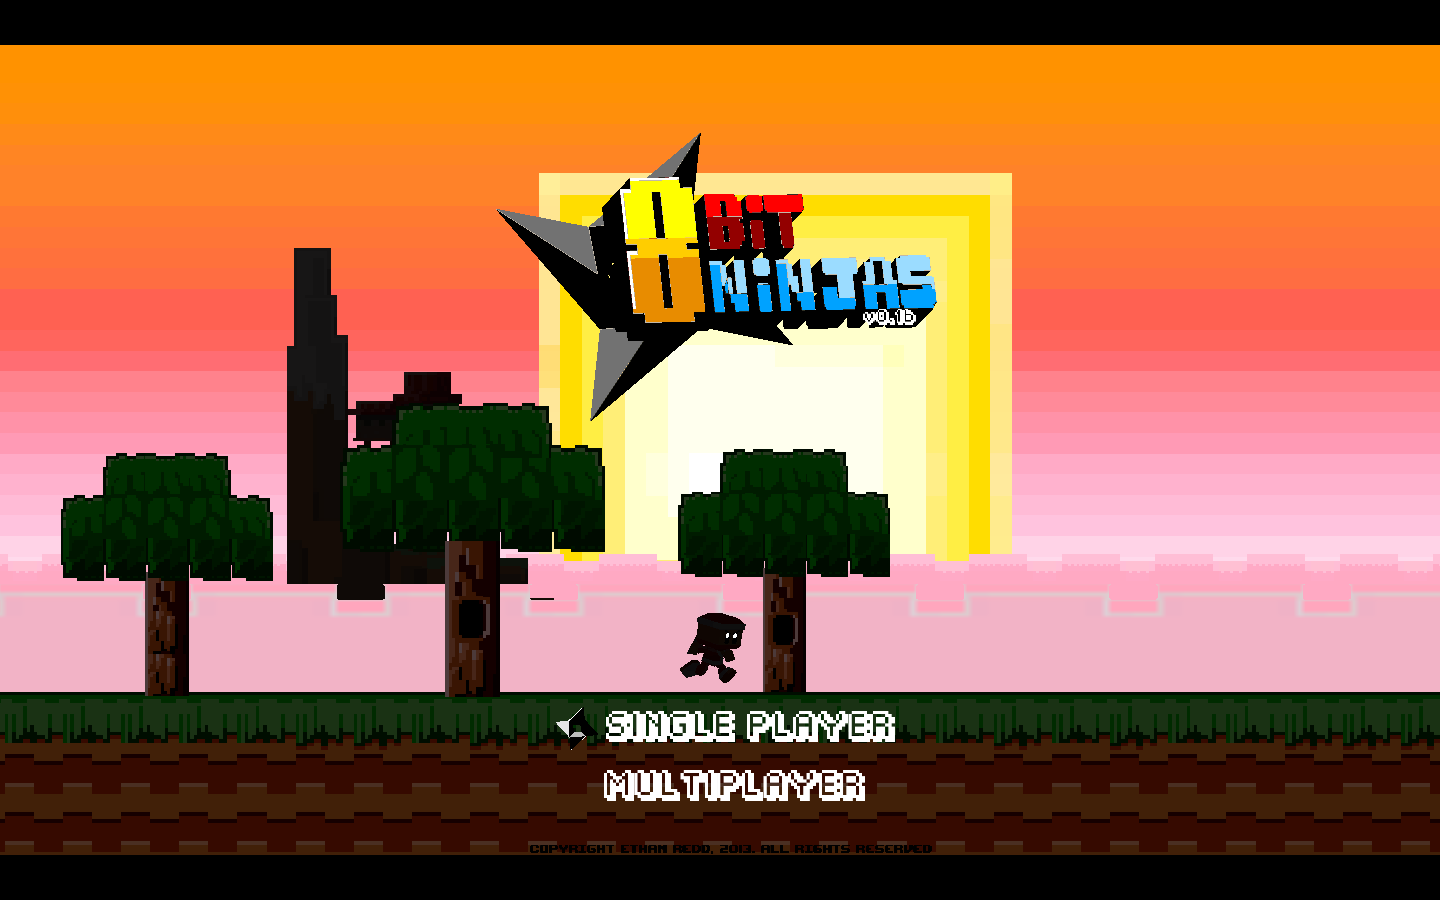 Screenshot of 8Bit Ninjas